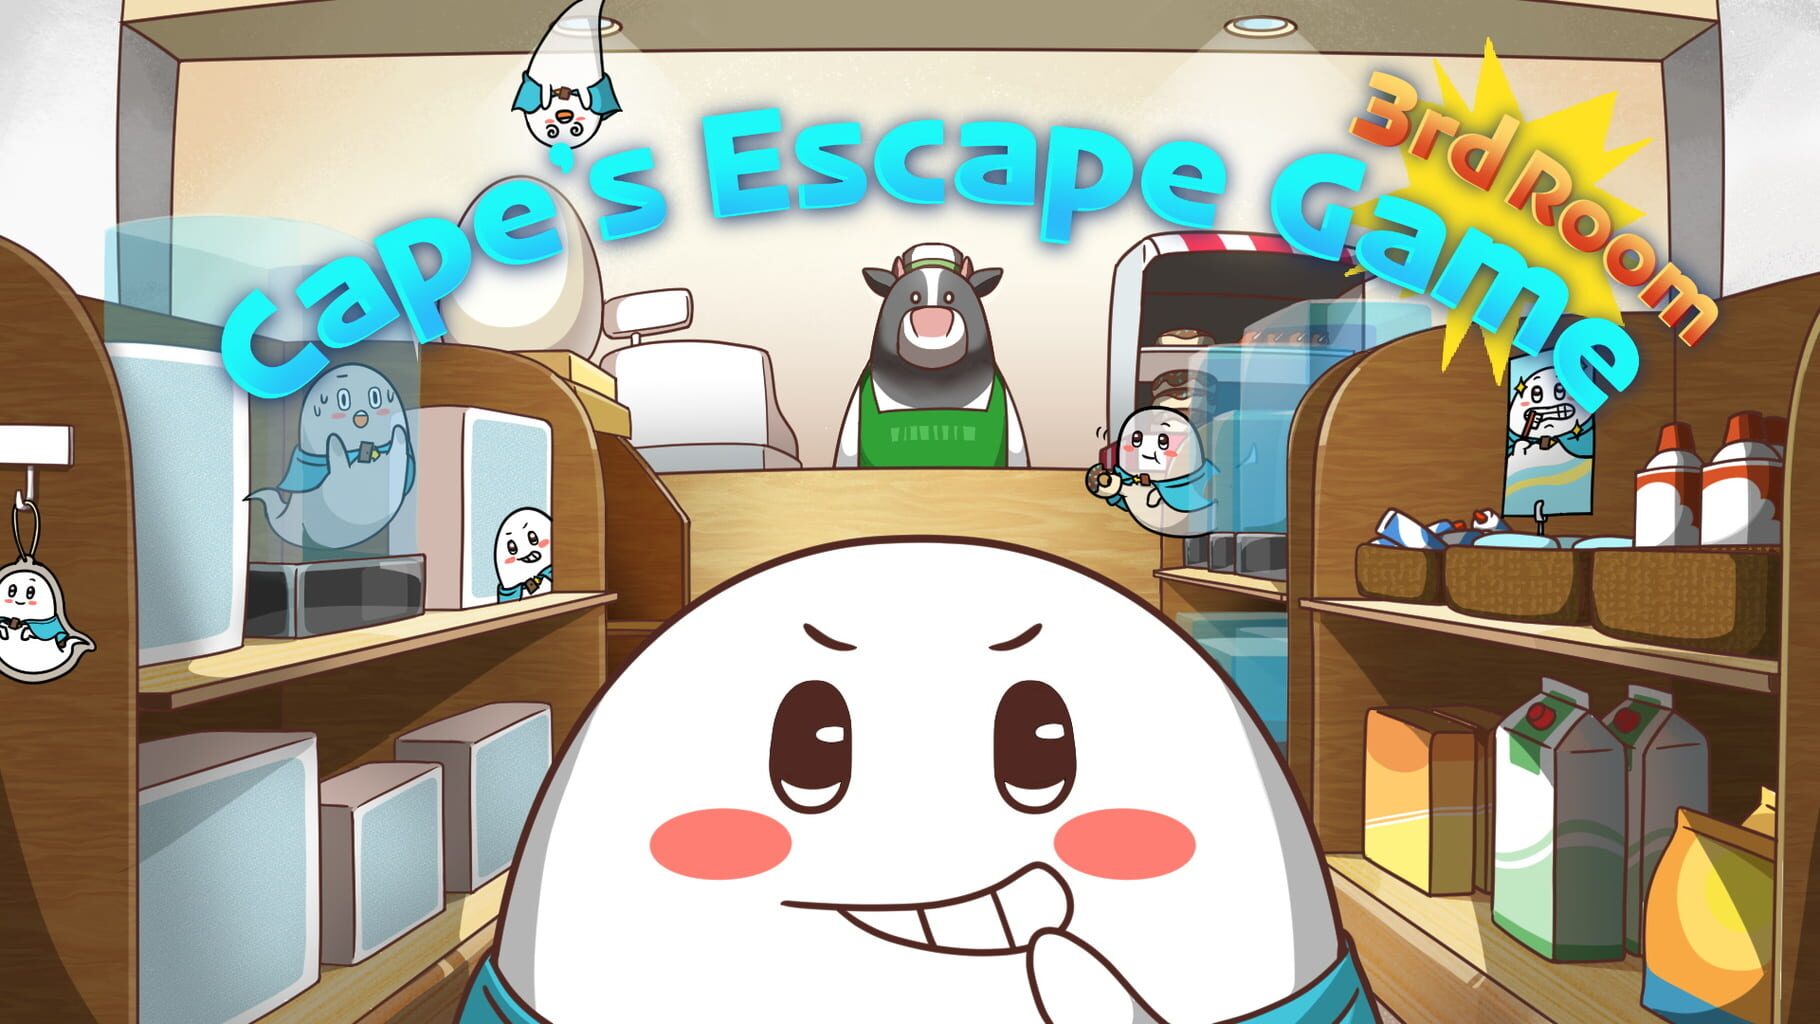 Cape's Escape Game 3rd Room artwork